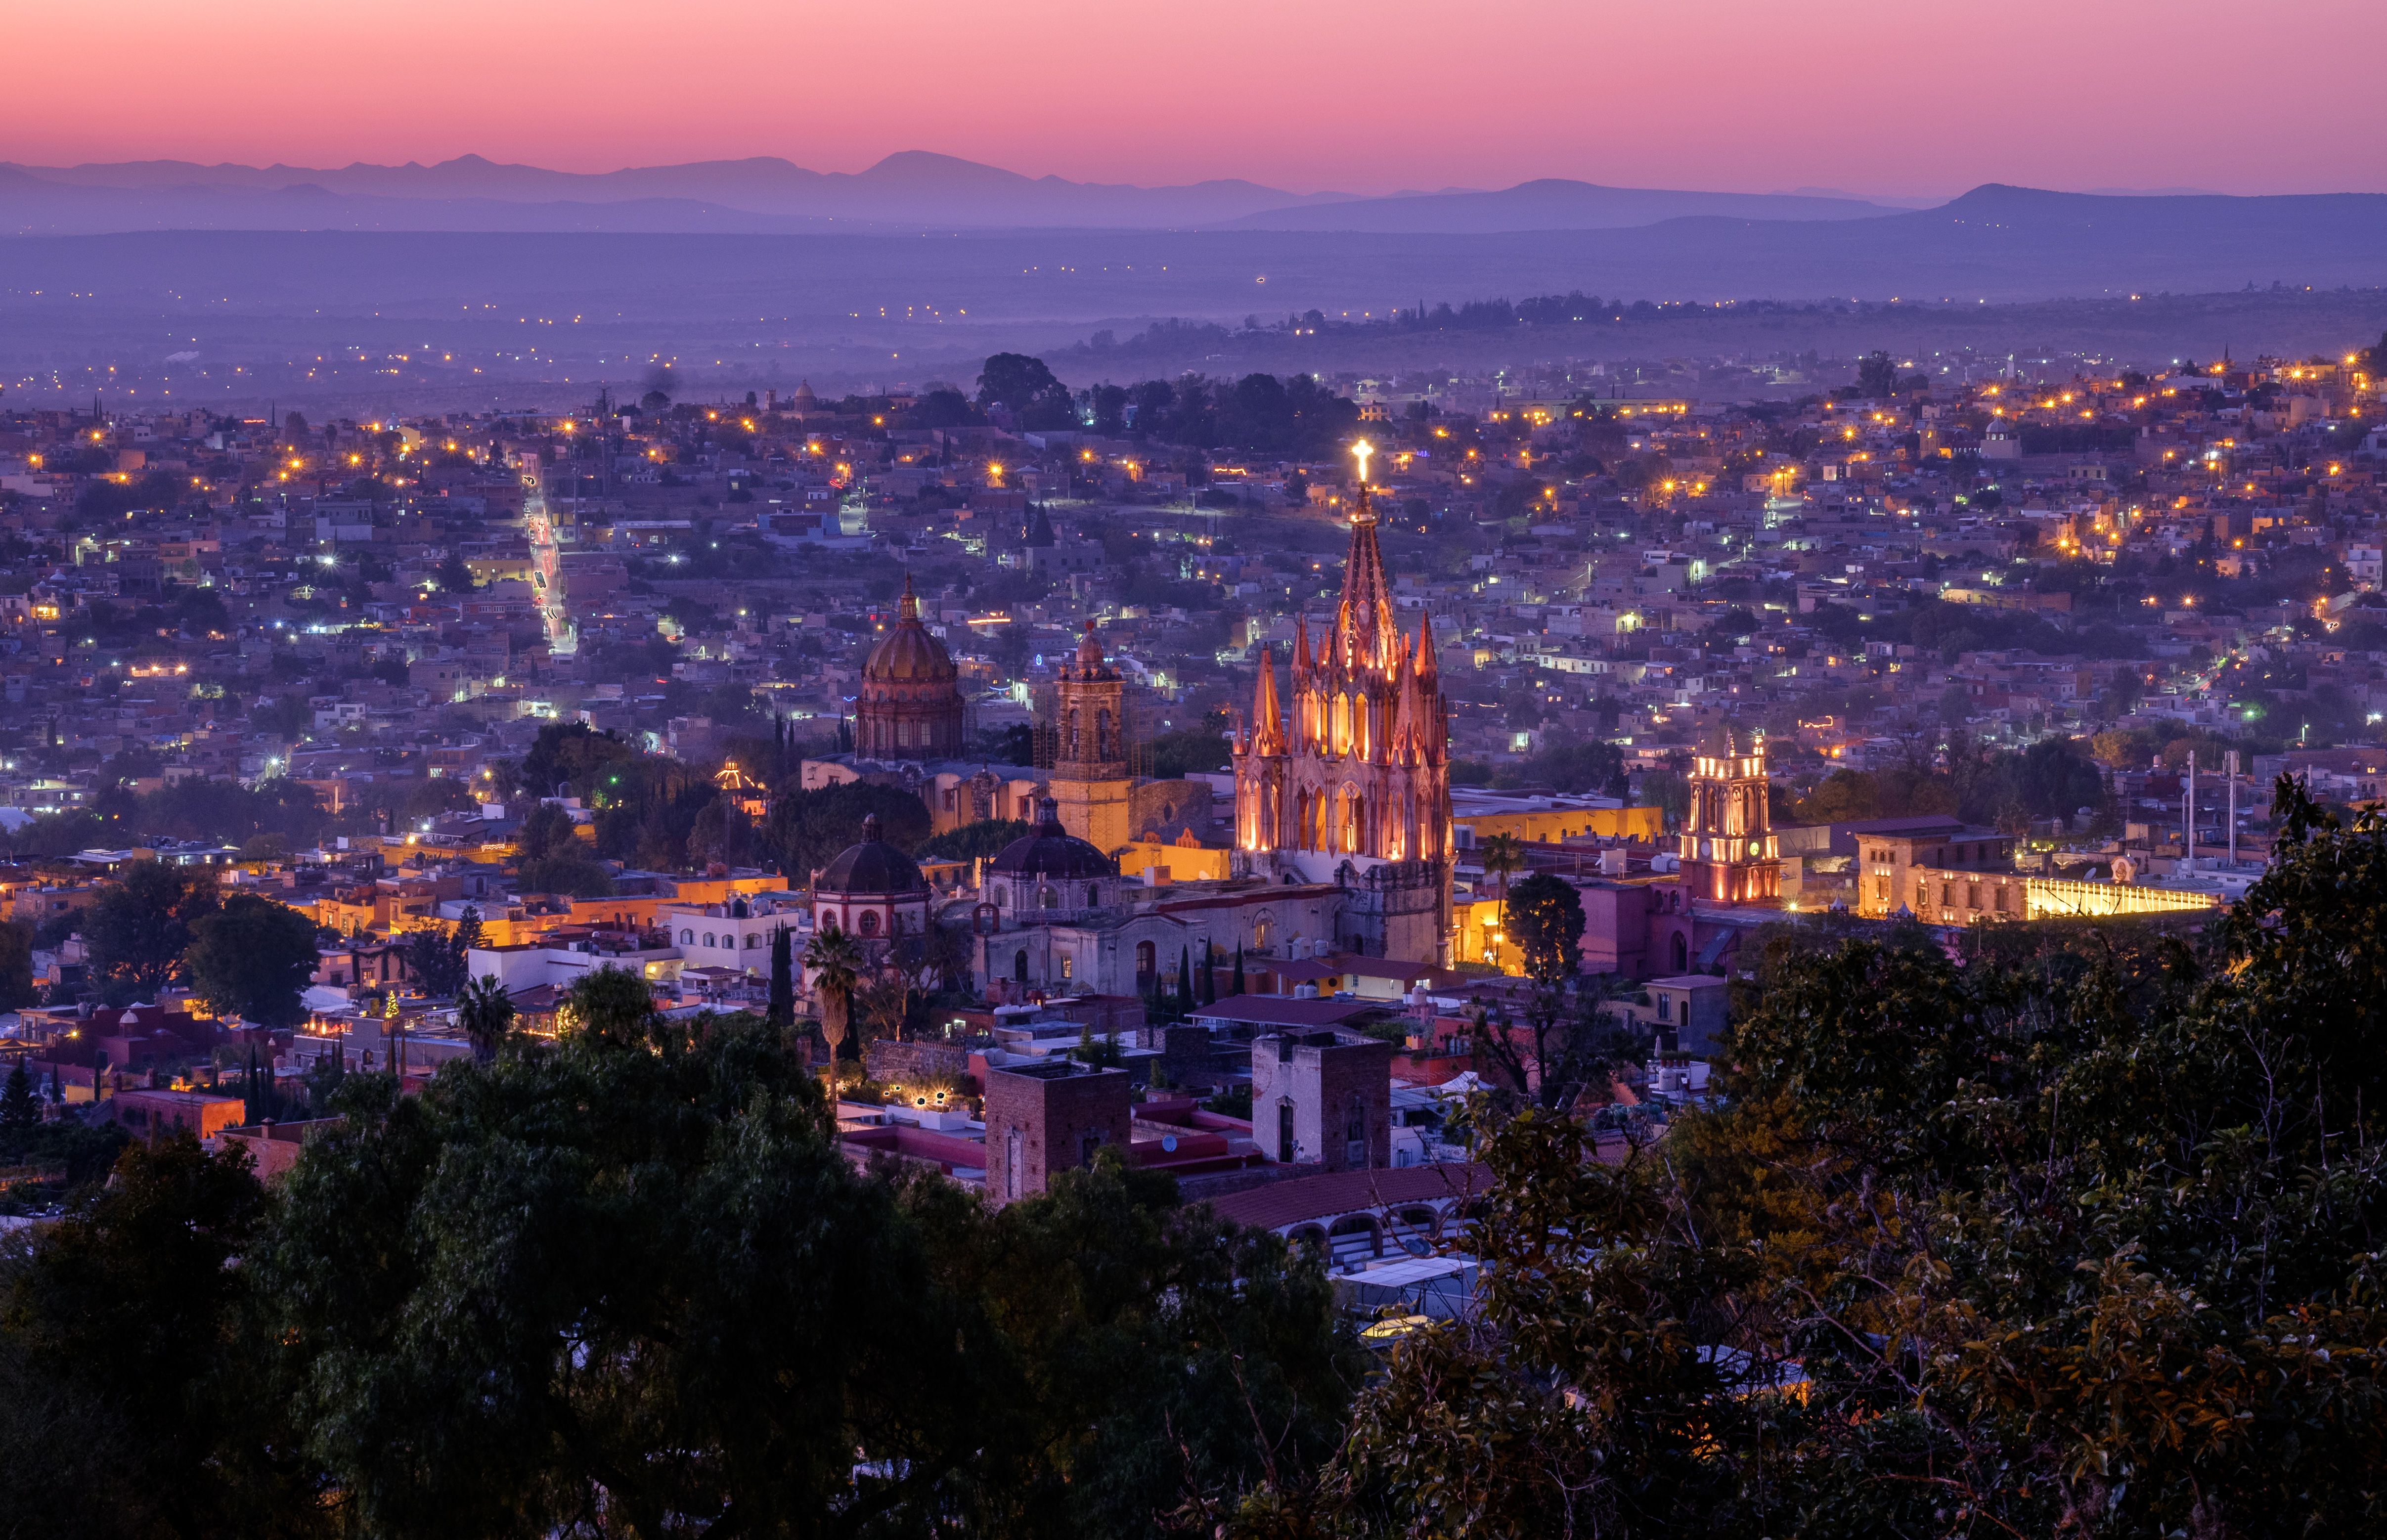 Prettiest Places to Visit San Miguel de Allende Miguel de Allende Travel Guide 2019